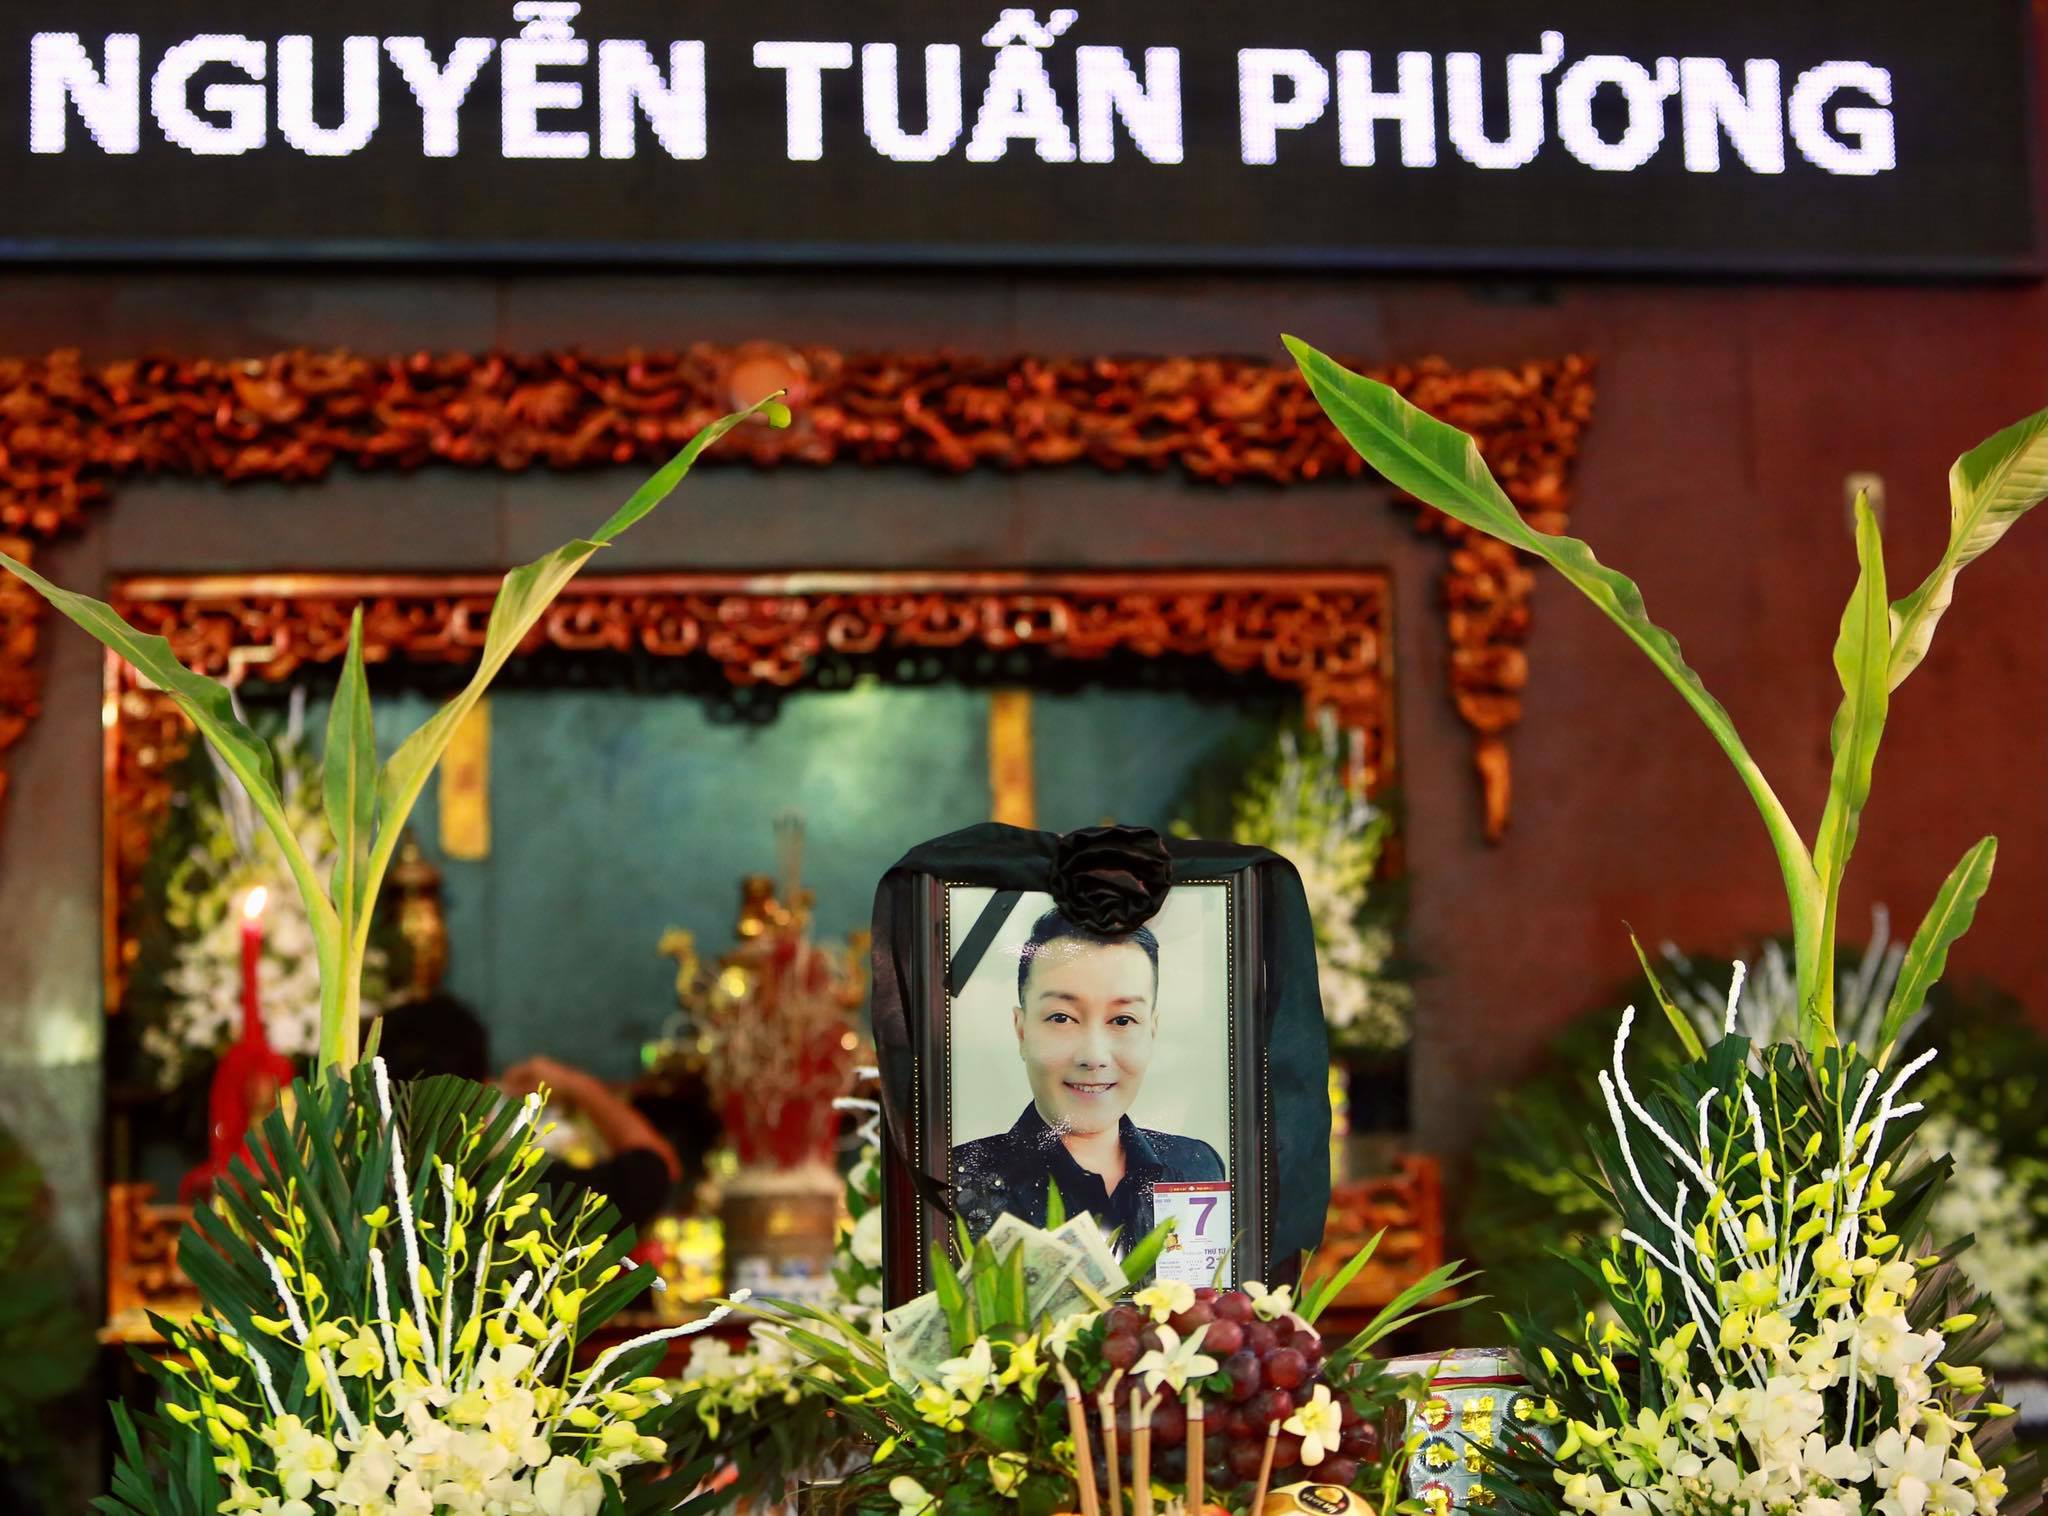 Ngày 7/10, tin nghệ sĩ Tuấn Phương
qua đời khiến khán giả, đồng nghiệp, người thân của nam ca sĩ đều
bàng hoàng.